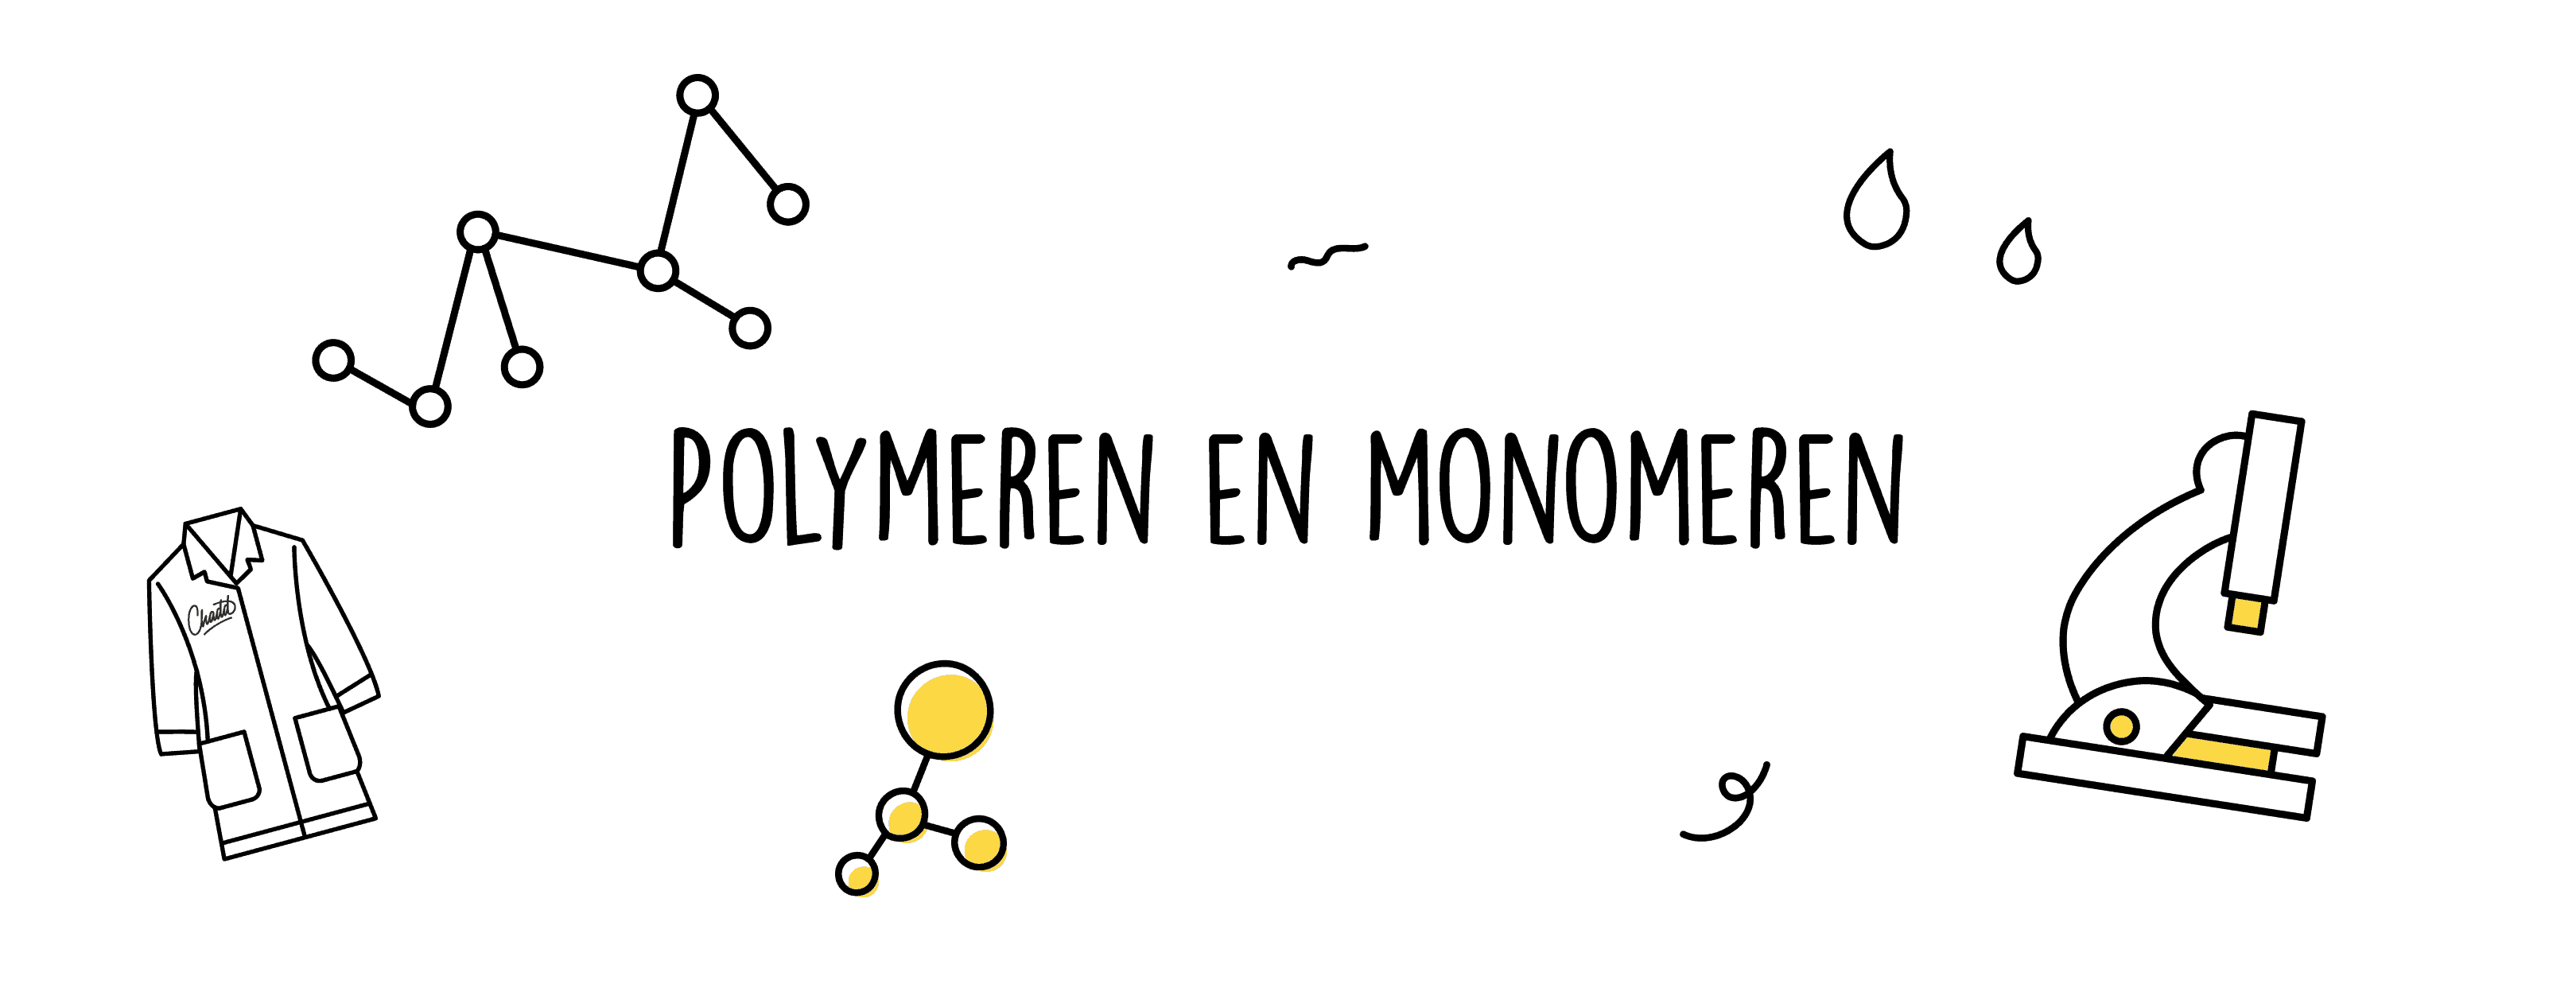 Polymeren en monomeren